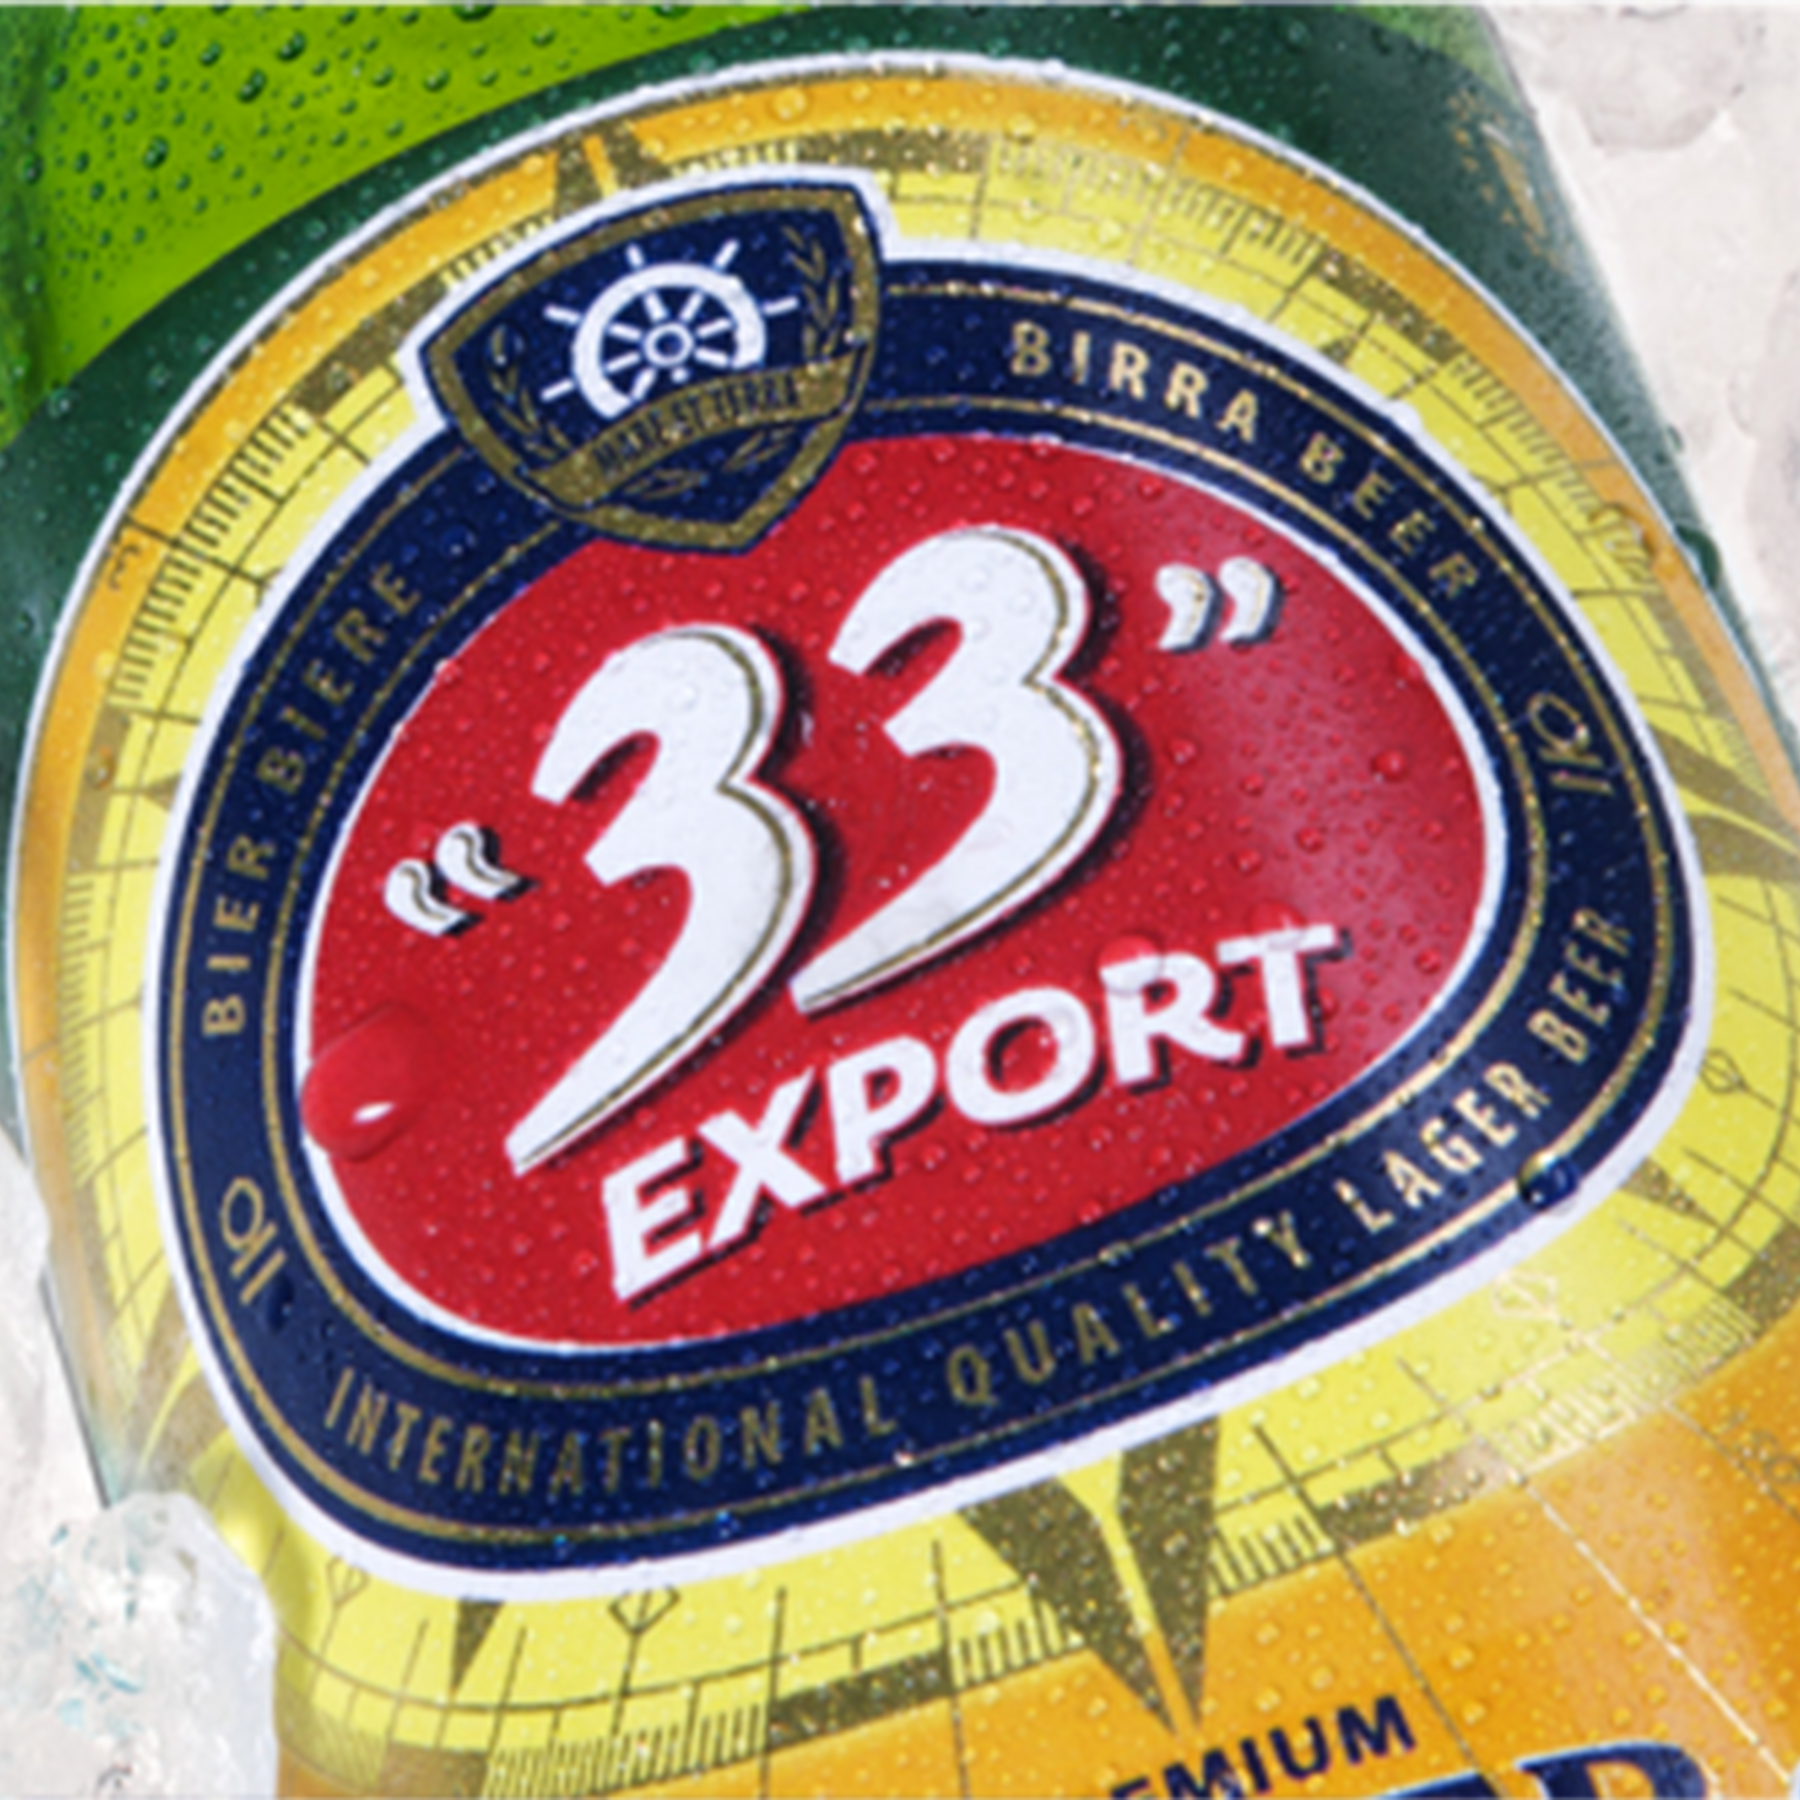 33 Export Beer